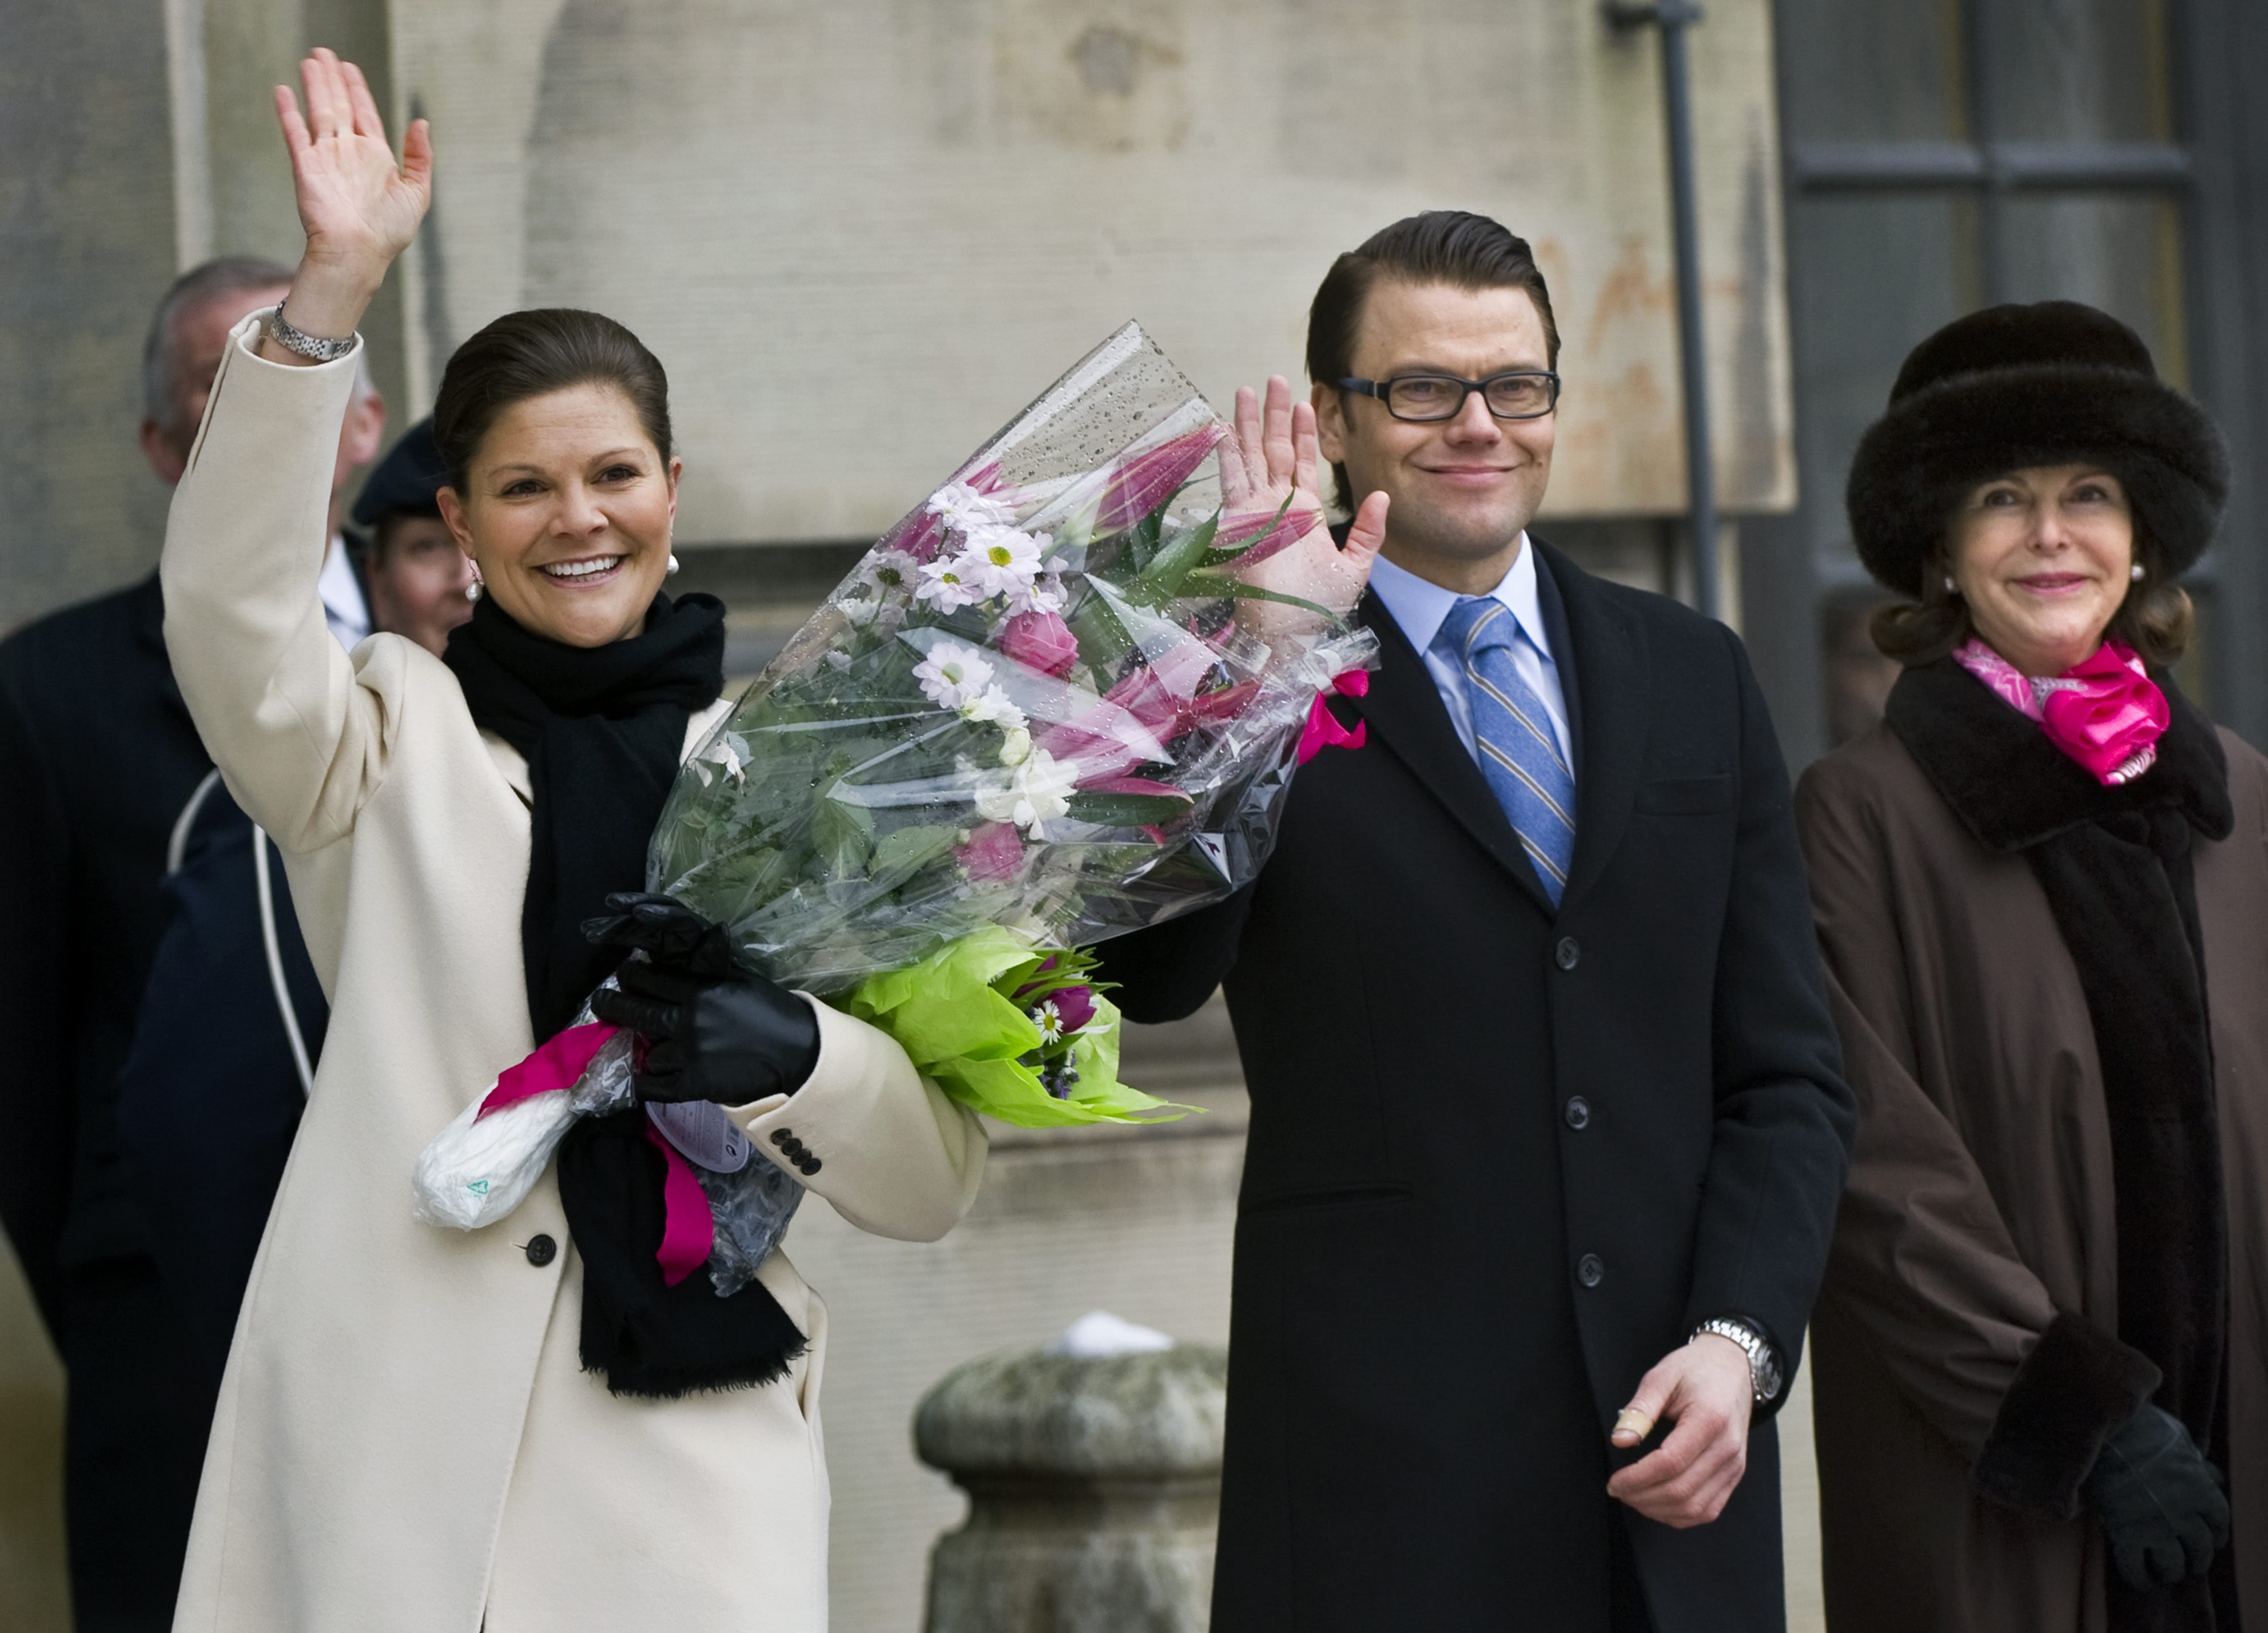 President, Kungliga bröllop, Republik, Prins Daniel, Gudrun Schyman, Monarki, Kungligt, kronprinsessan Victoria, Riksdagsvalet 2010, Feministiskt initiativ